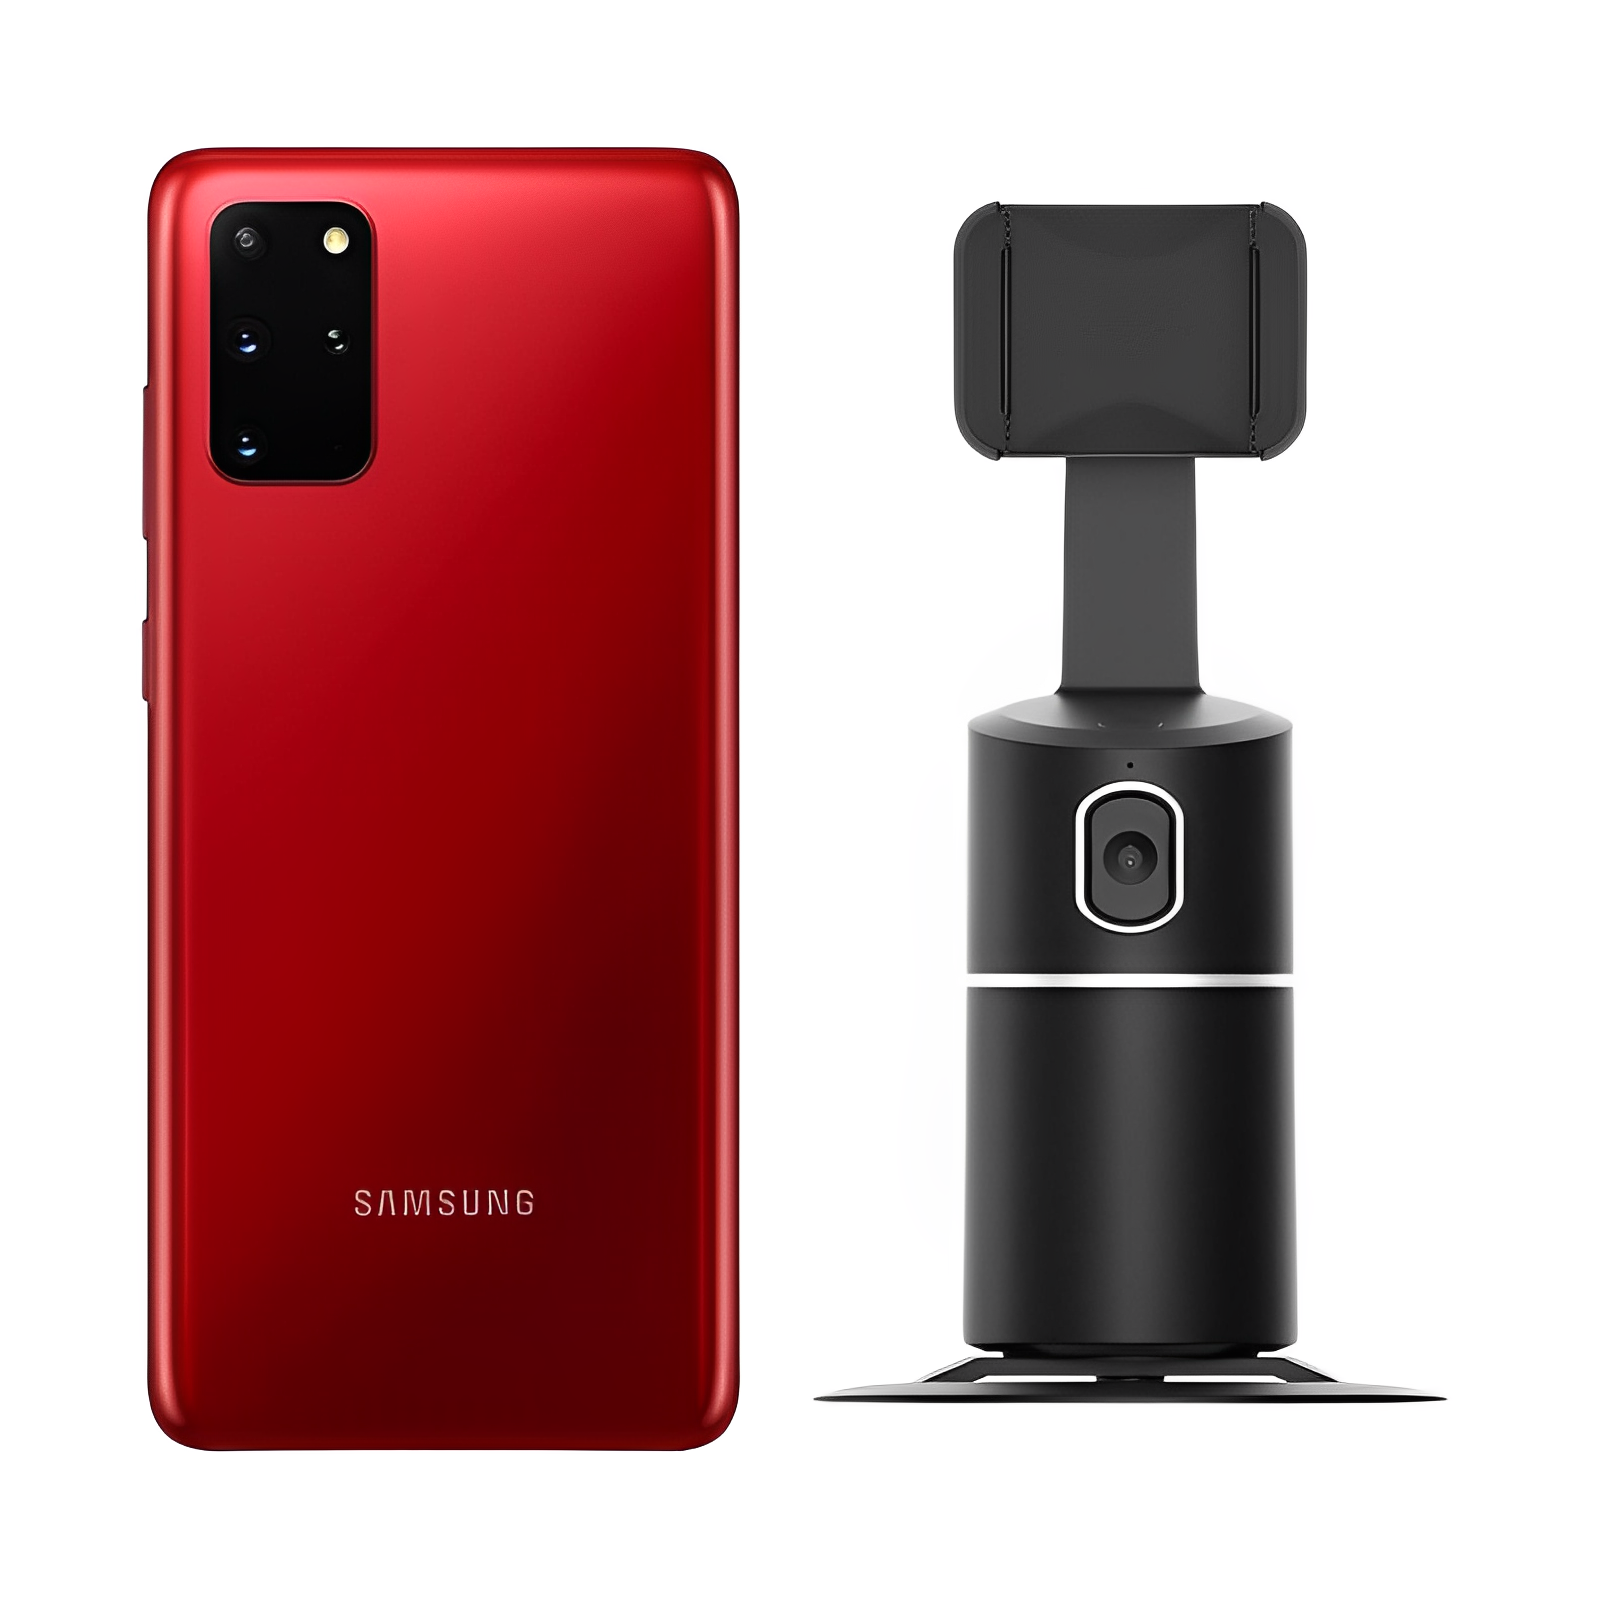 Samsung Galaxy S20 Plus Rojo 256GB Reacondicionado Snapdragon